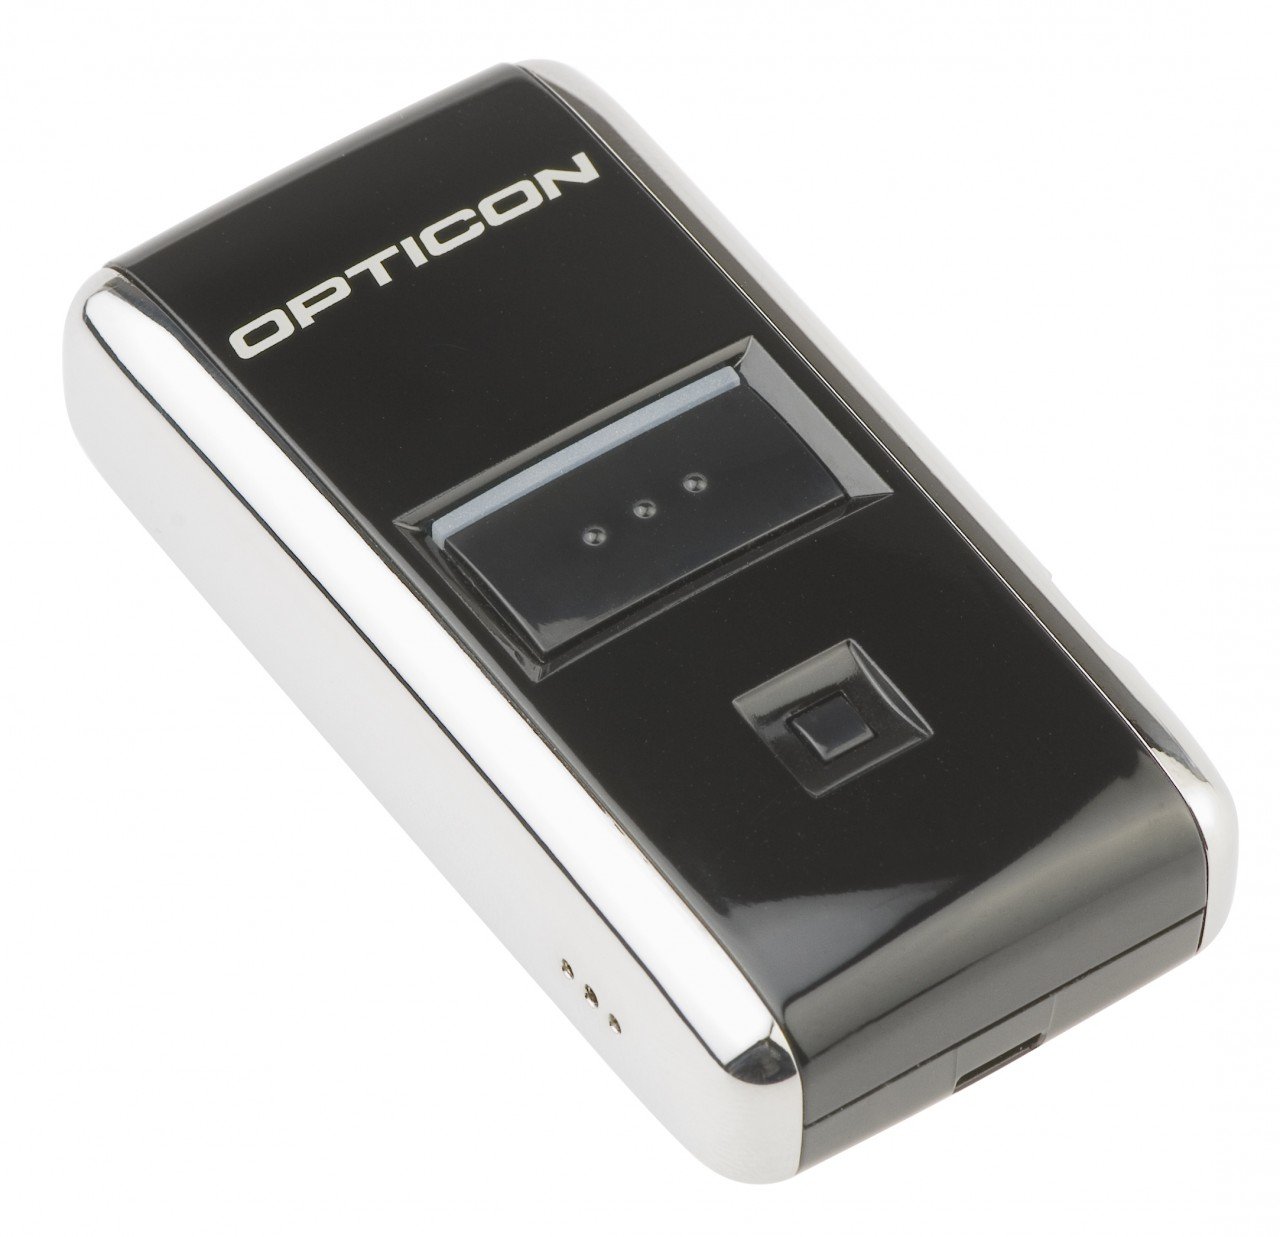 OPTICON ماسح ضوئي ليزر 1D للباركود اللاسلكي بتقنية البلوتوث OPN-2006